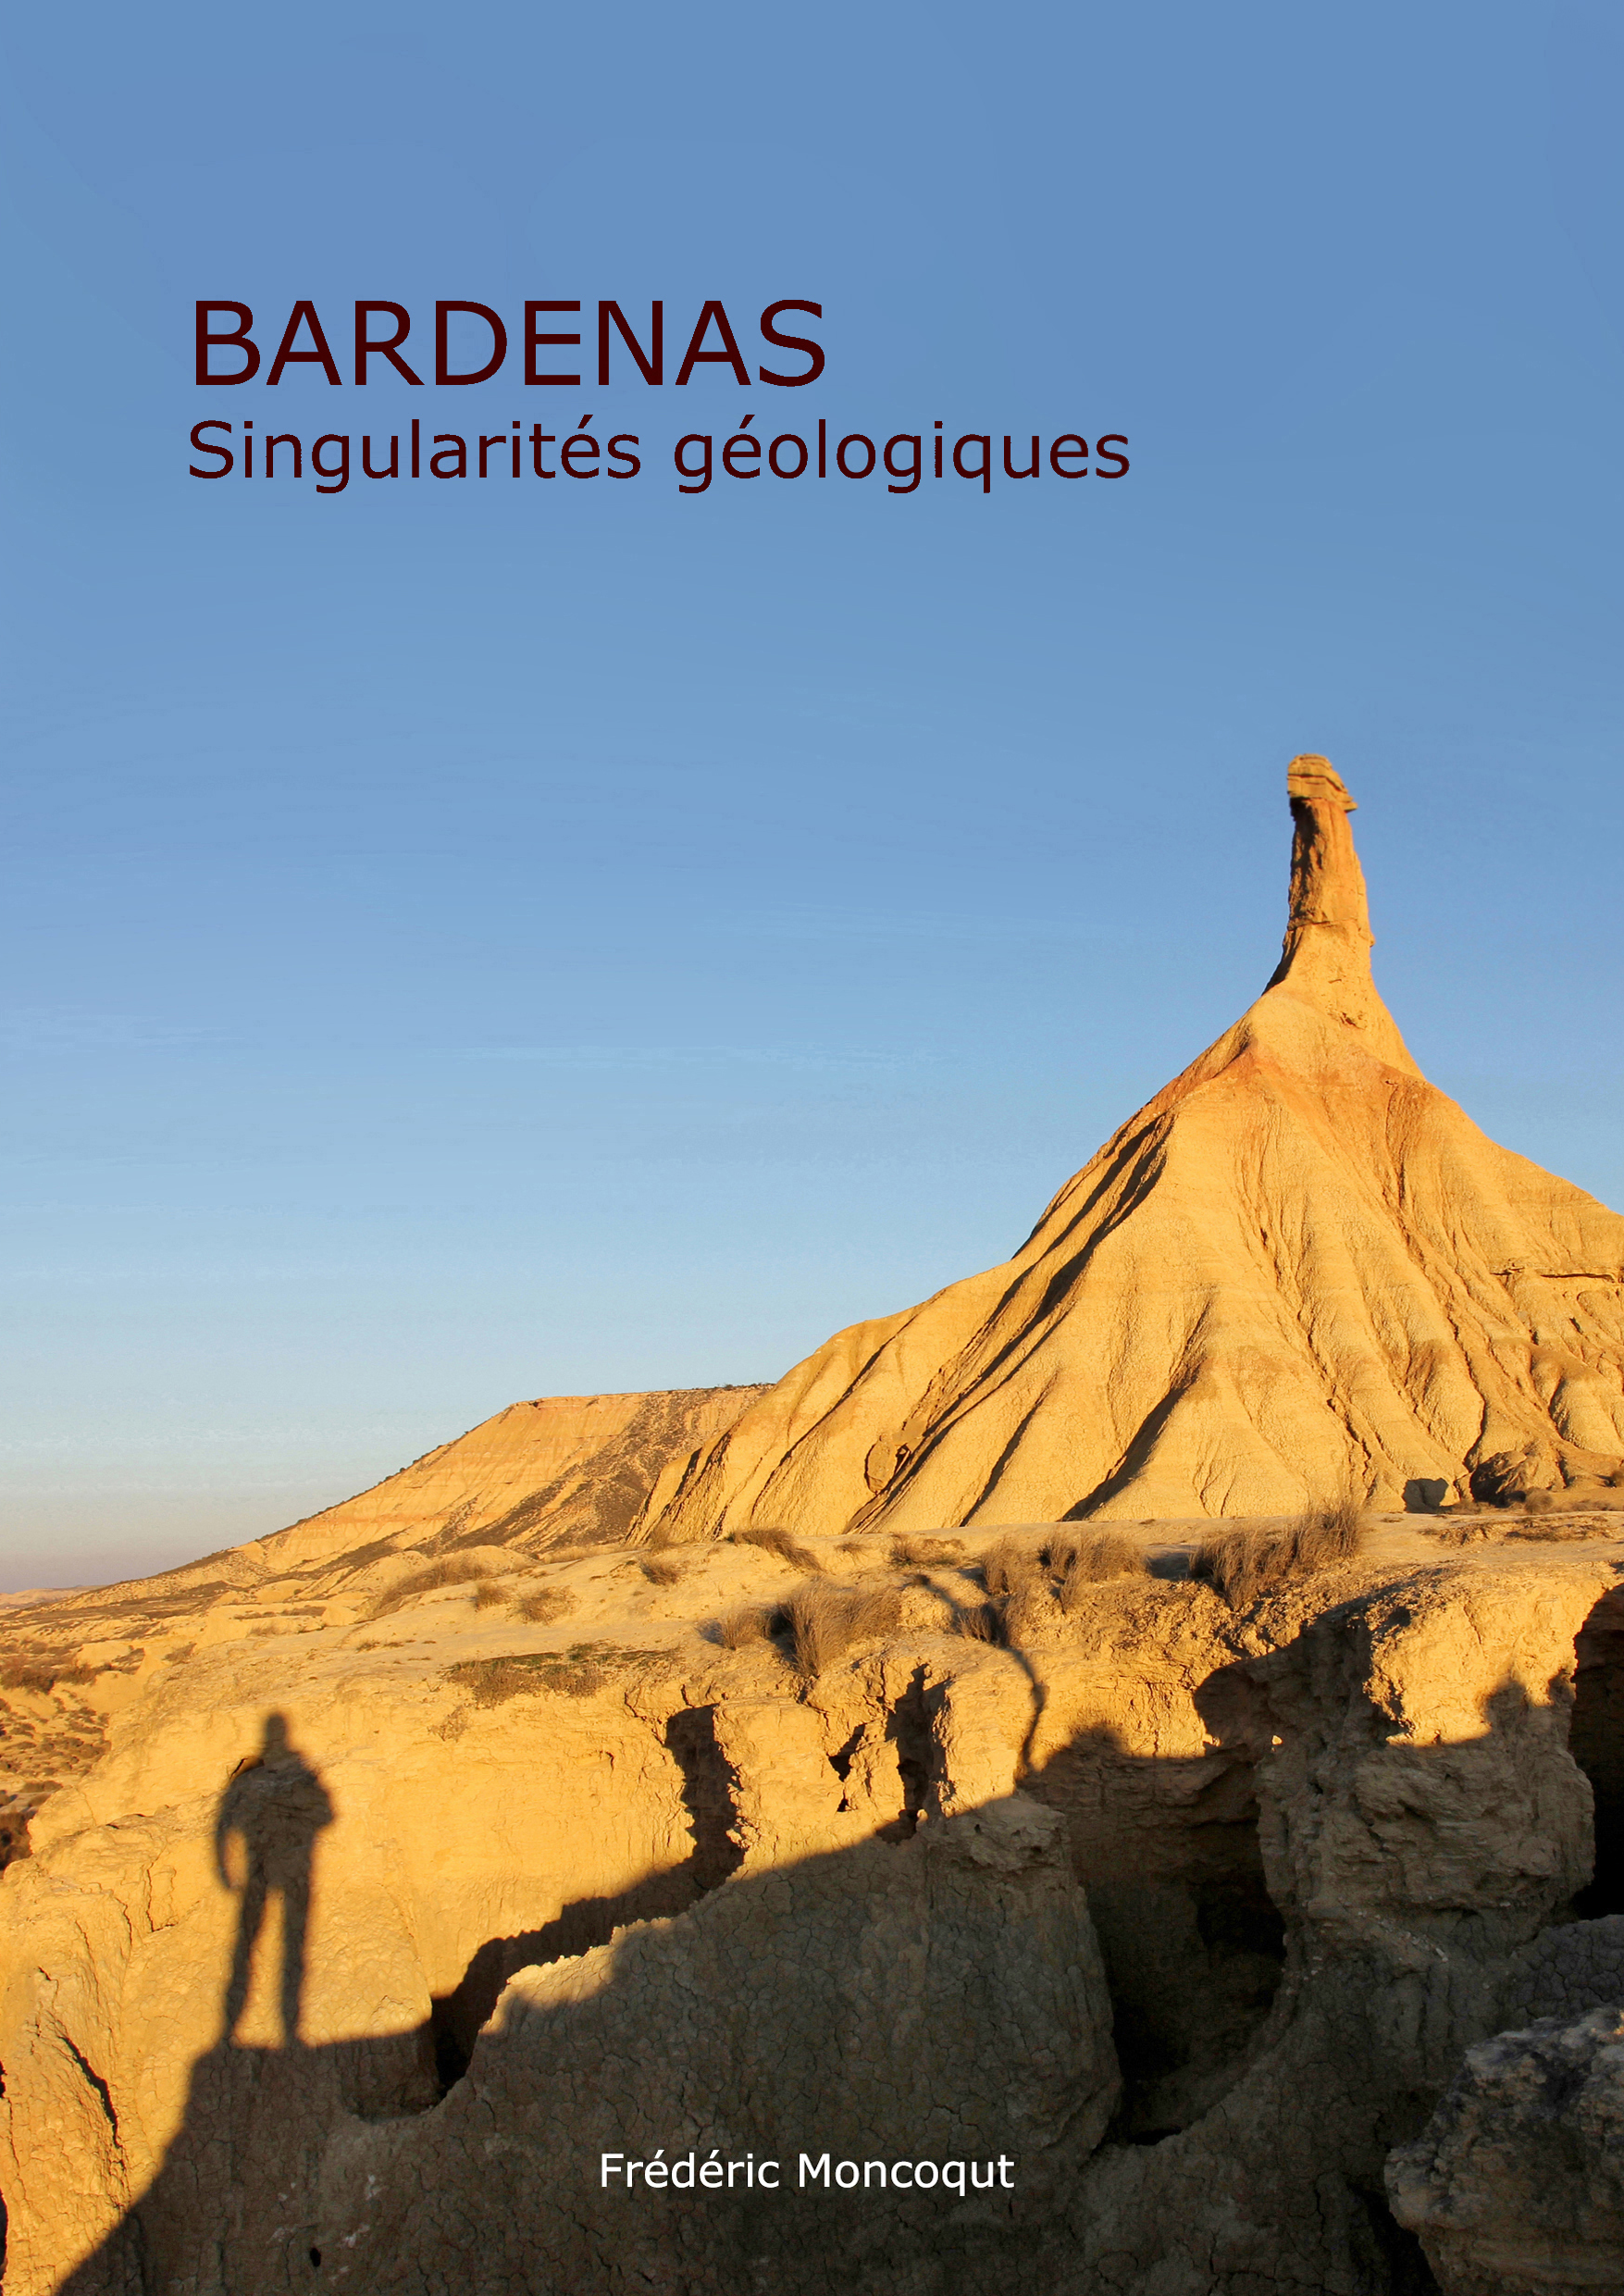 BARDENAS, Singularités géologiques.